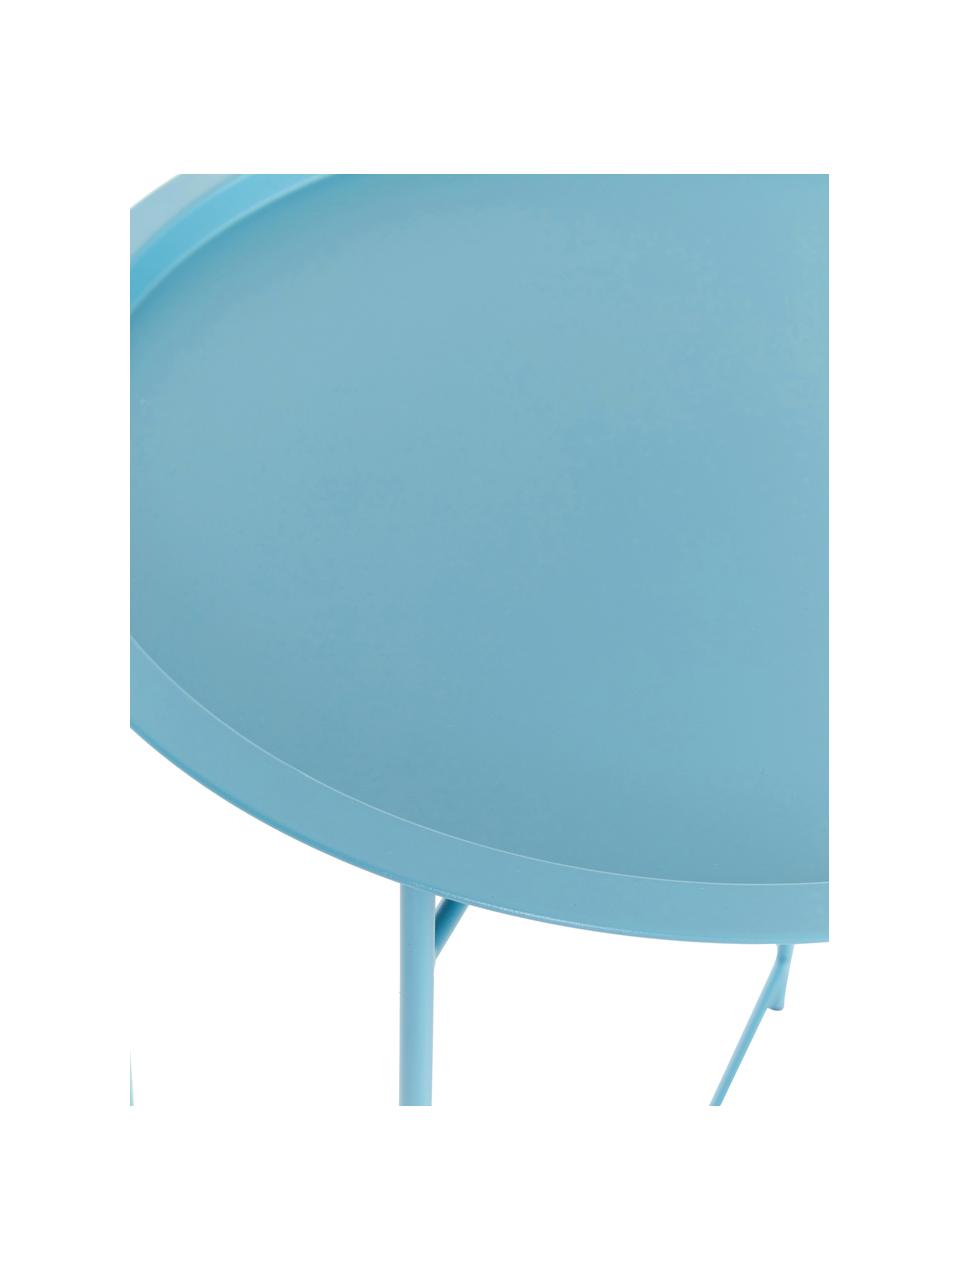 Tablett-Tisch Sangro in Blau aus Metall, Metall, pulverbeschichtet, Blau, Ø 46 x H 52 cm